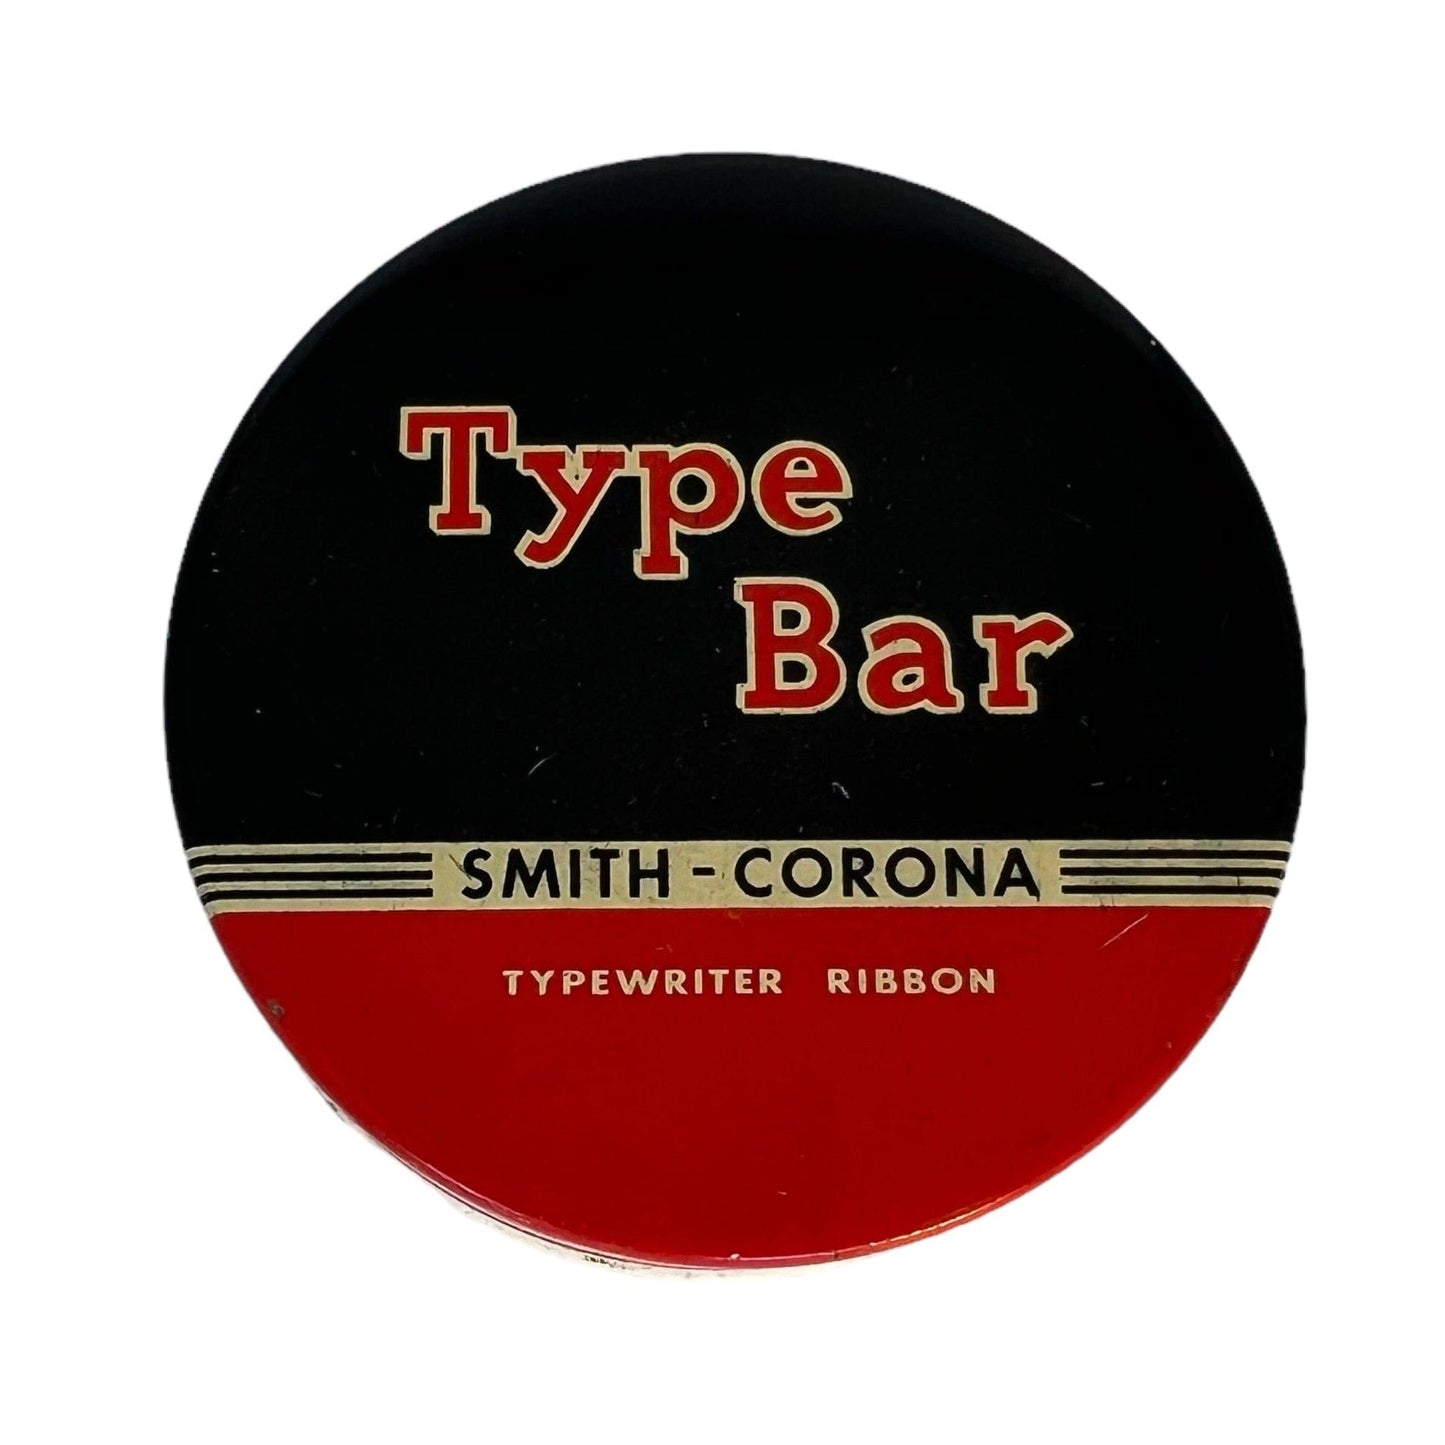 Toronto Typewriters Typewriter Accessory Smith Corona Typewriter Ribbon Tin